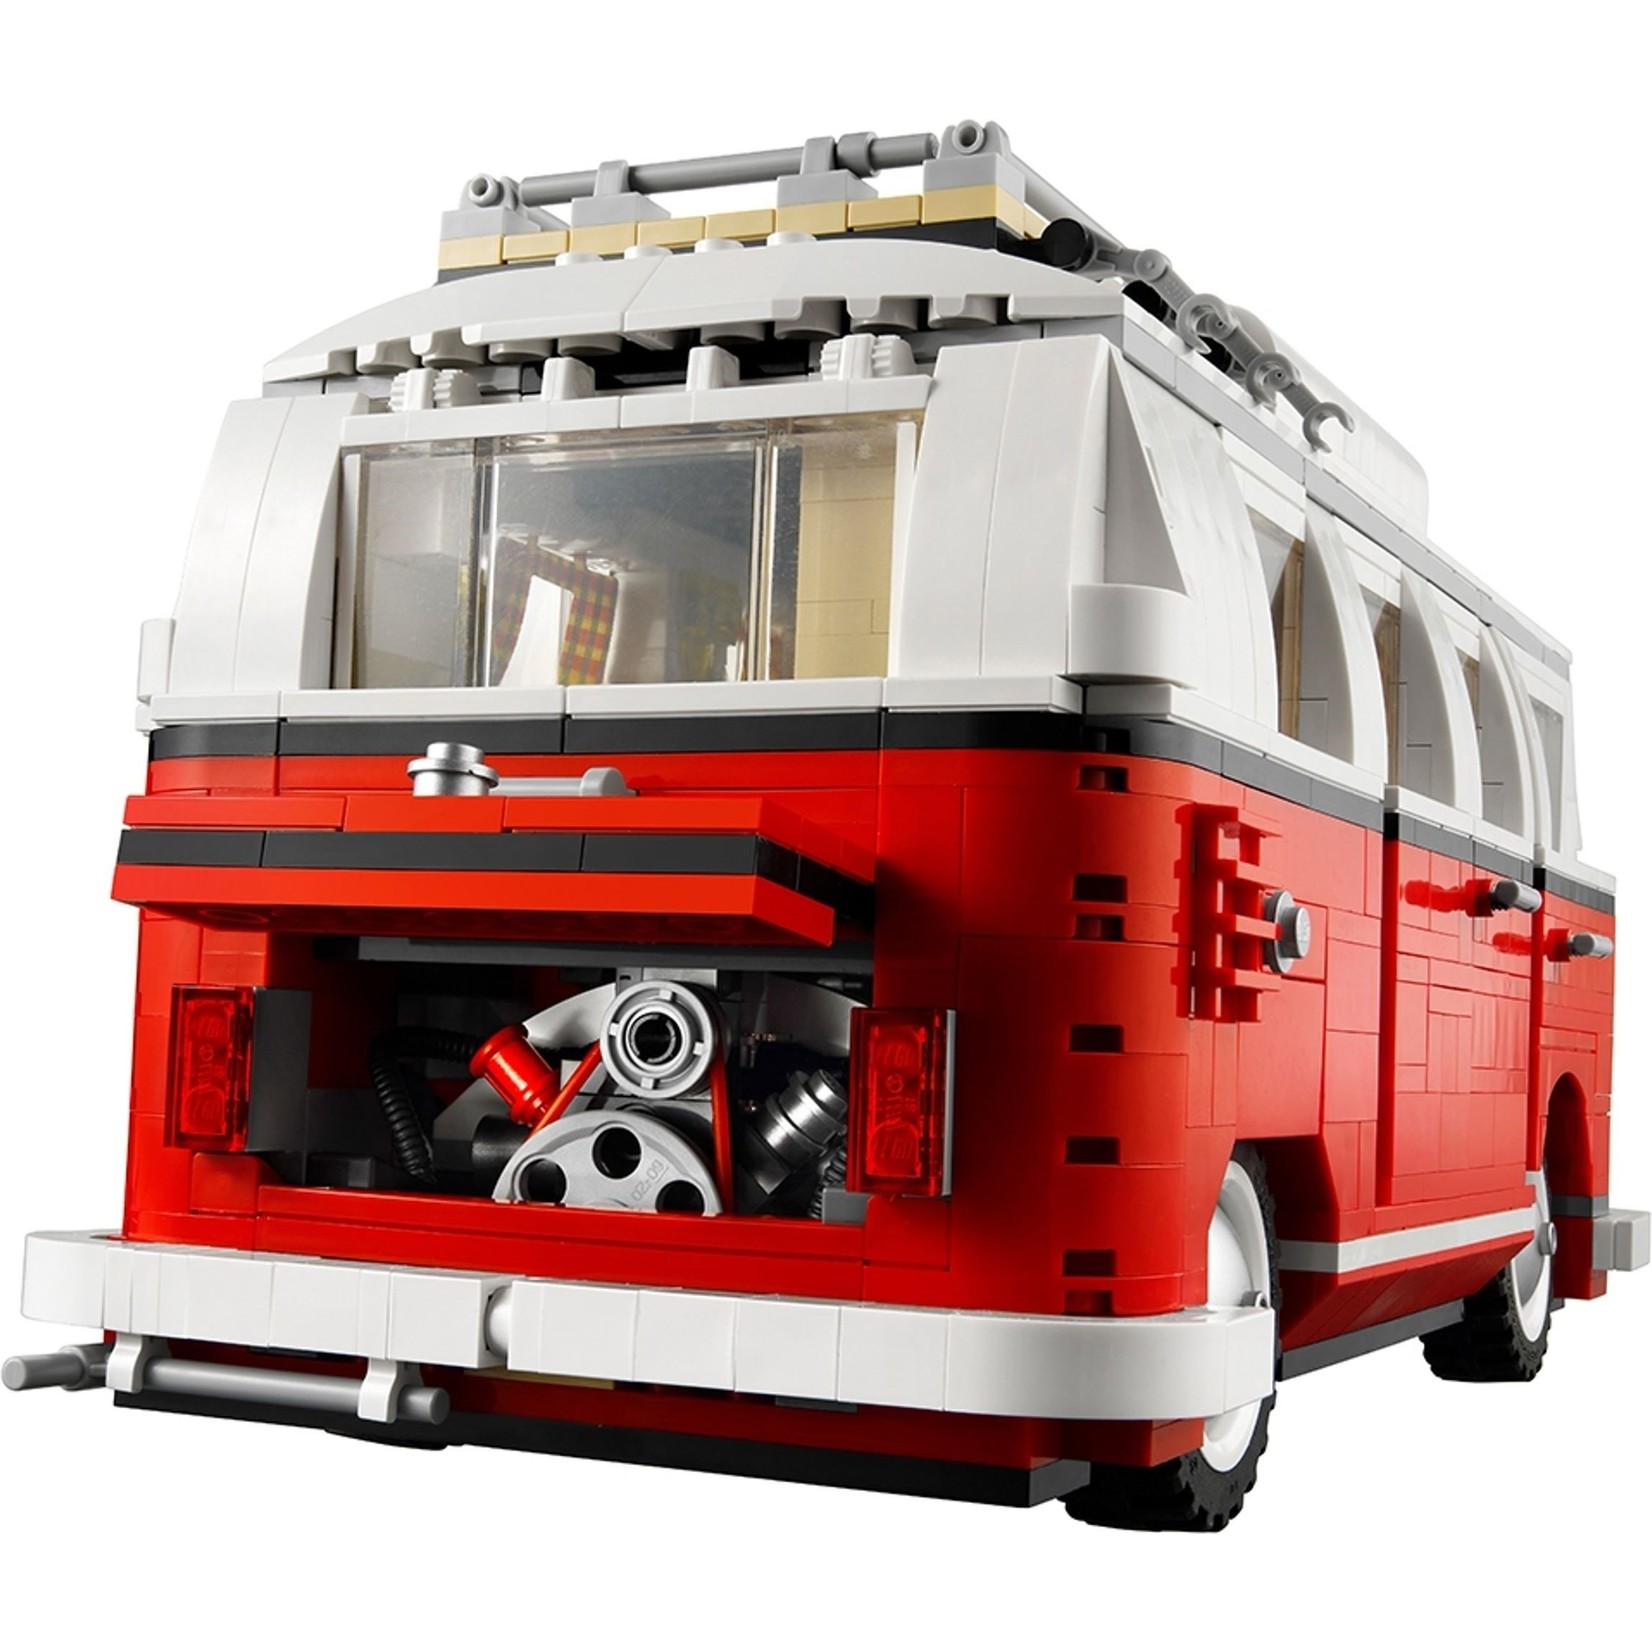 LEGO Volkswagen T1 Kamper - 10220